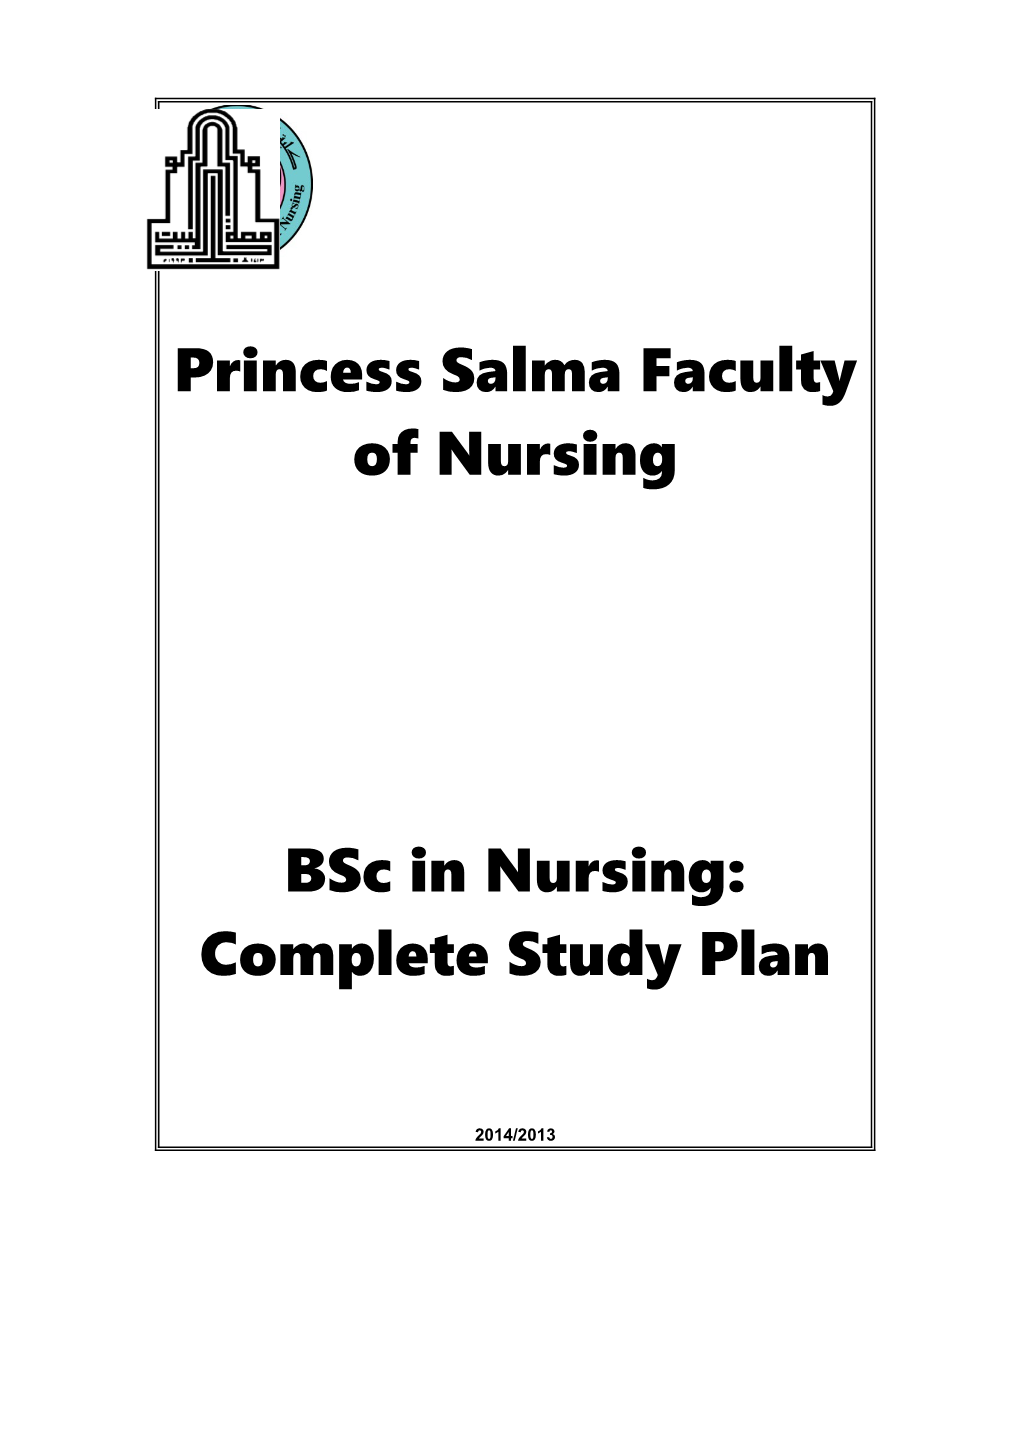 Princess Salma Faculty of Nursing